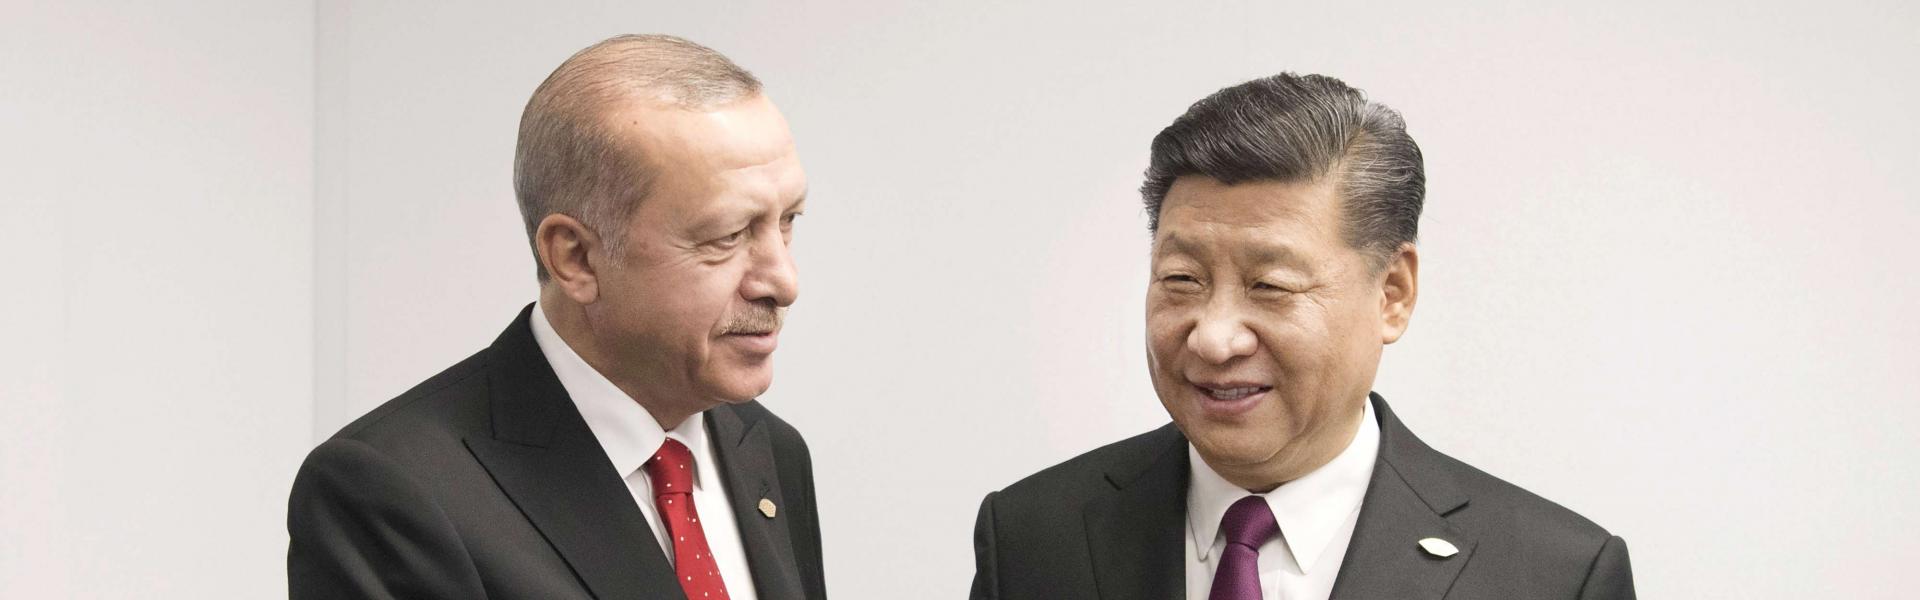 Ο Ερντογάν «πούλησε» τους Ουιγούρους για να αγοράσει όπλα από την Κίνα! – Θεαματική μεταστροφή